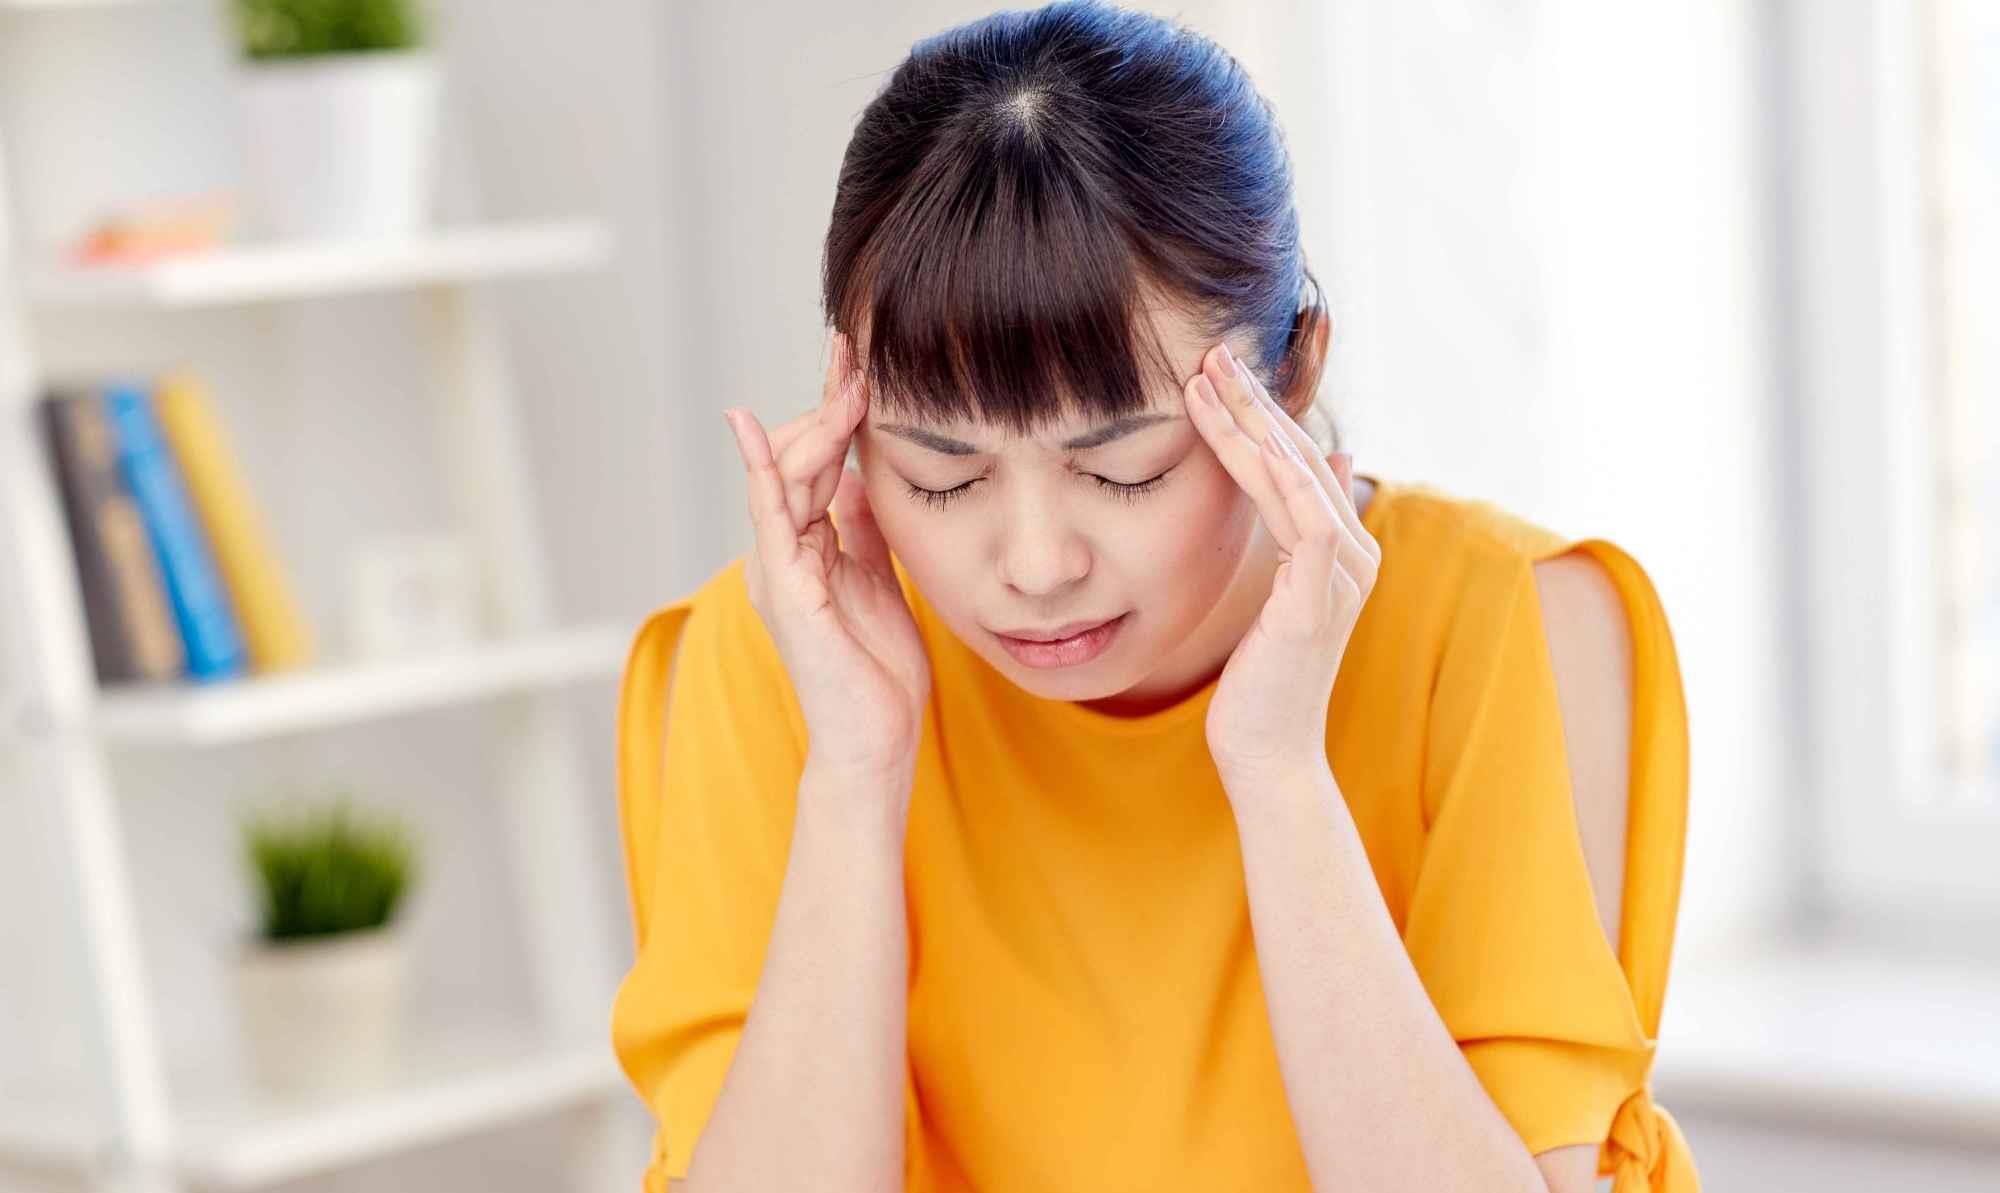 原创女人经常头痛,或不是疾病原因,试试这3方法,远离偏头痛